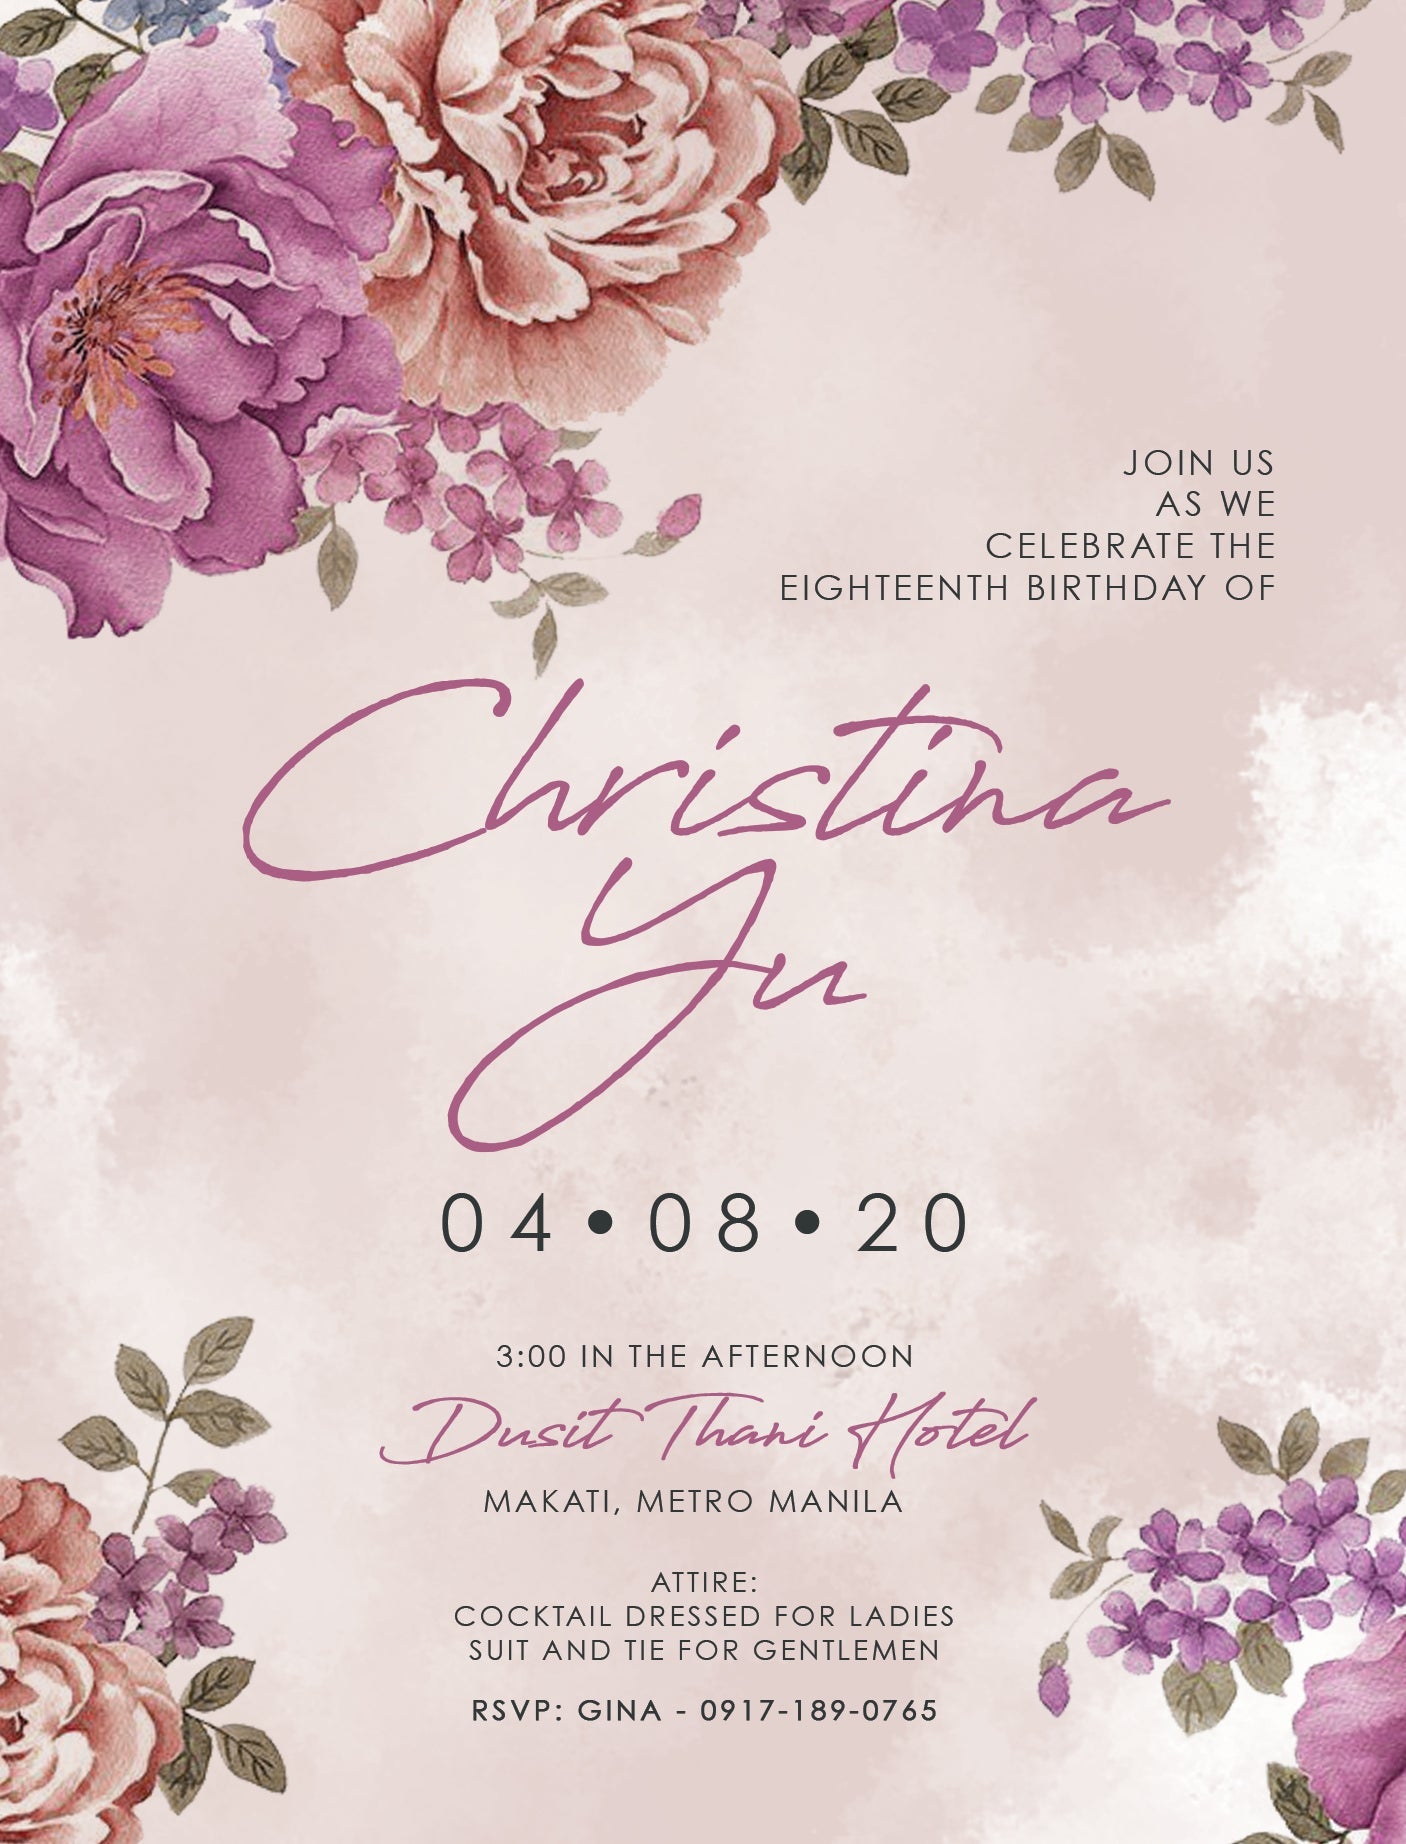 Christa Debut E-Invite